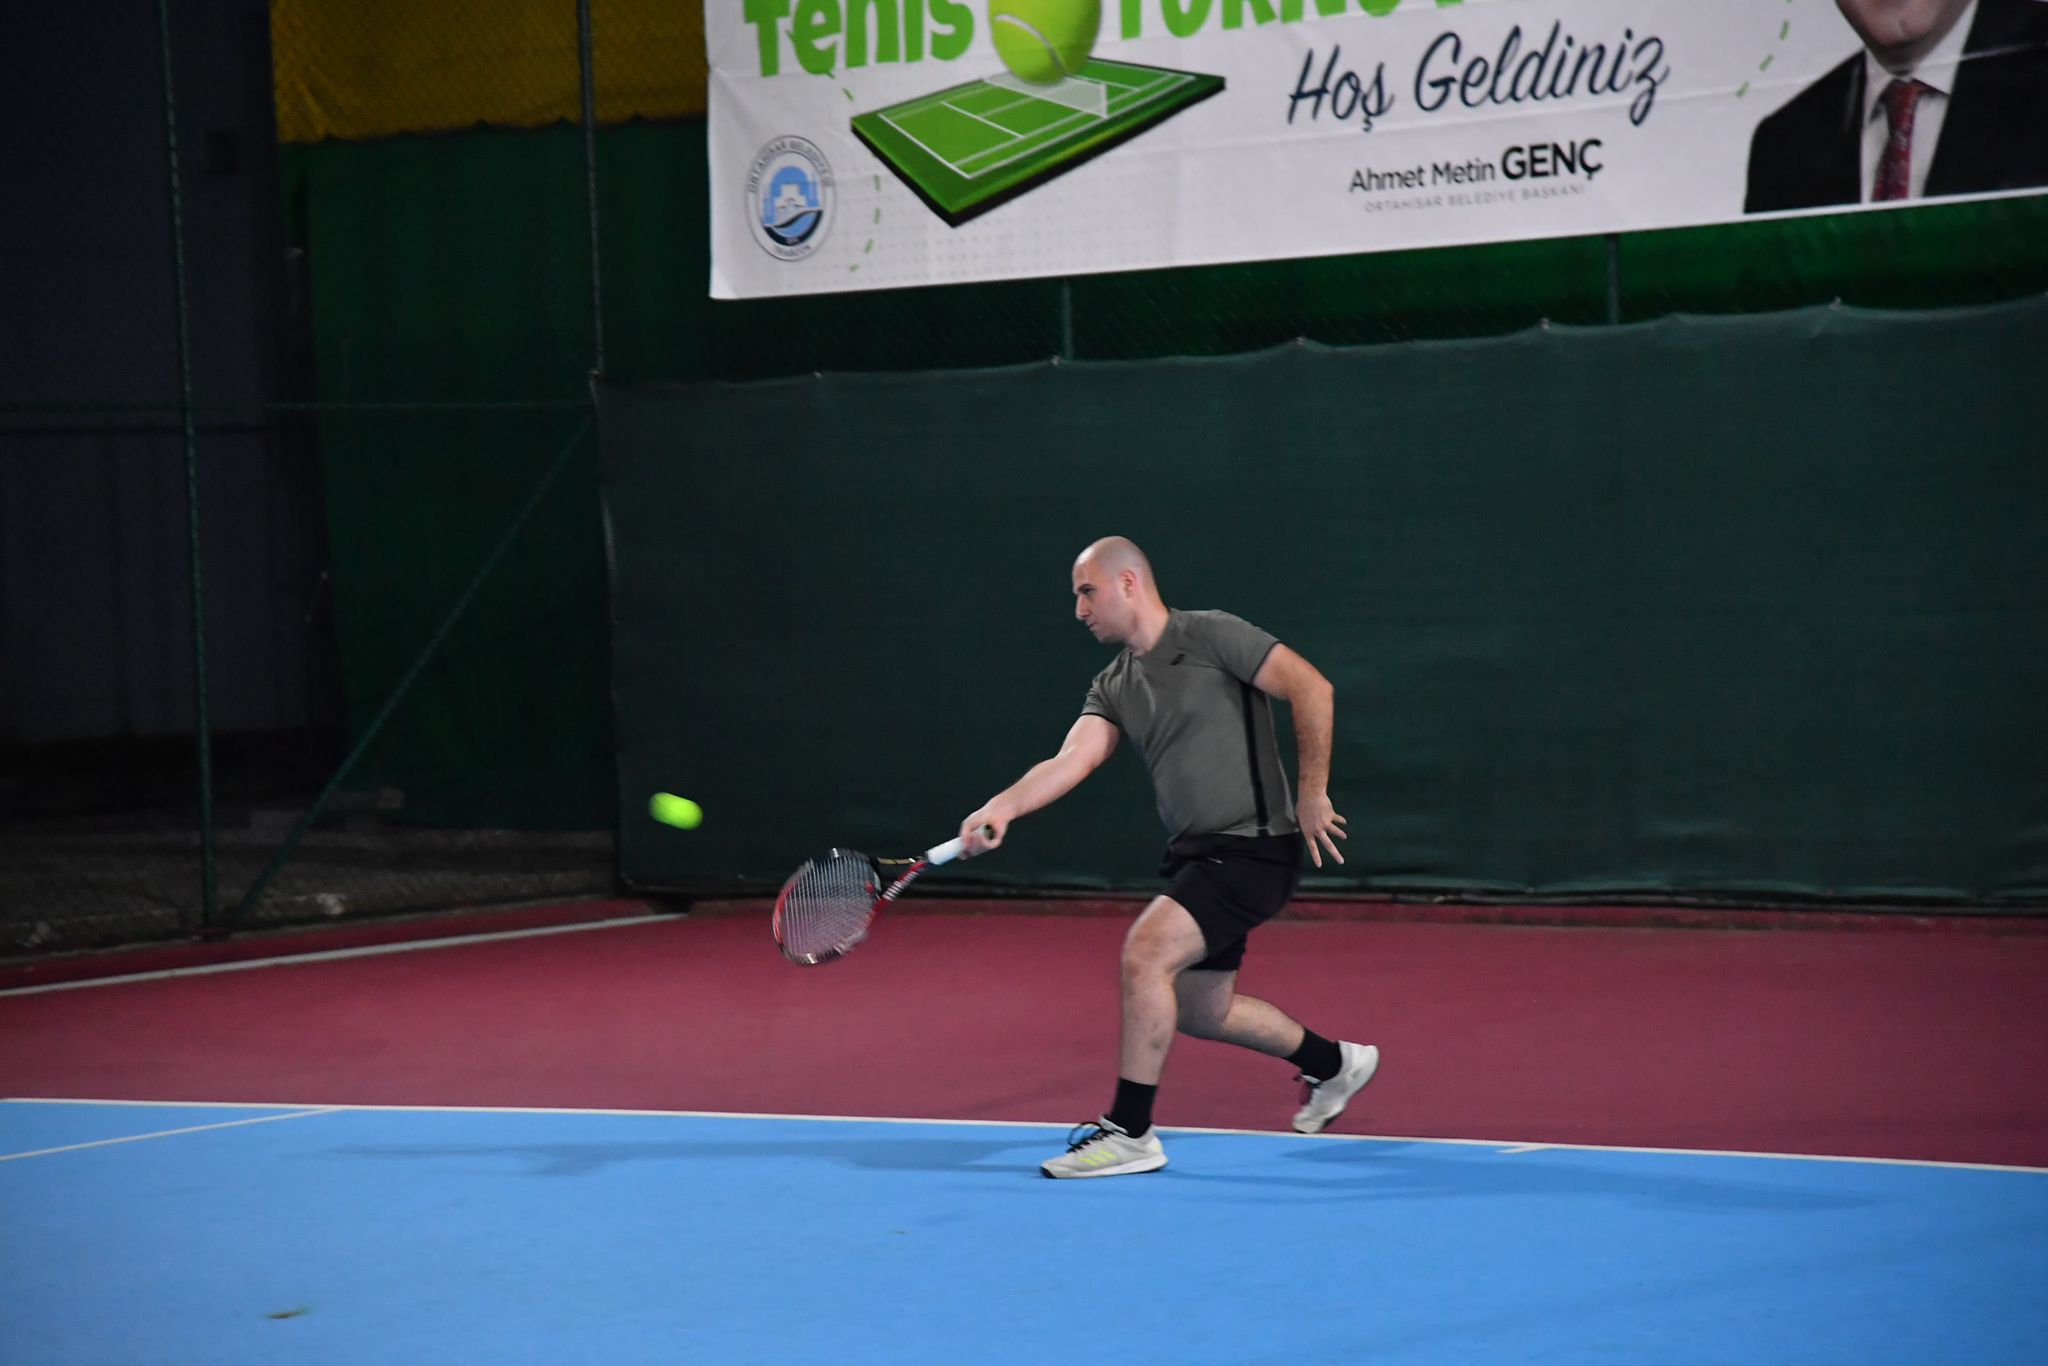 Ortahisar Belediyesi'nin düzenlediği "Veteran Tenis Turnuvası" sürüyor